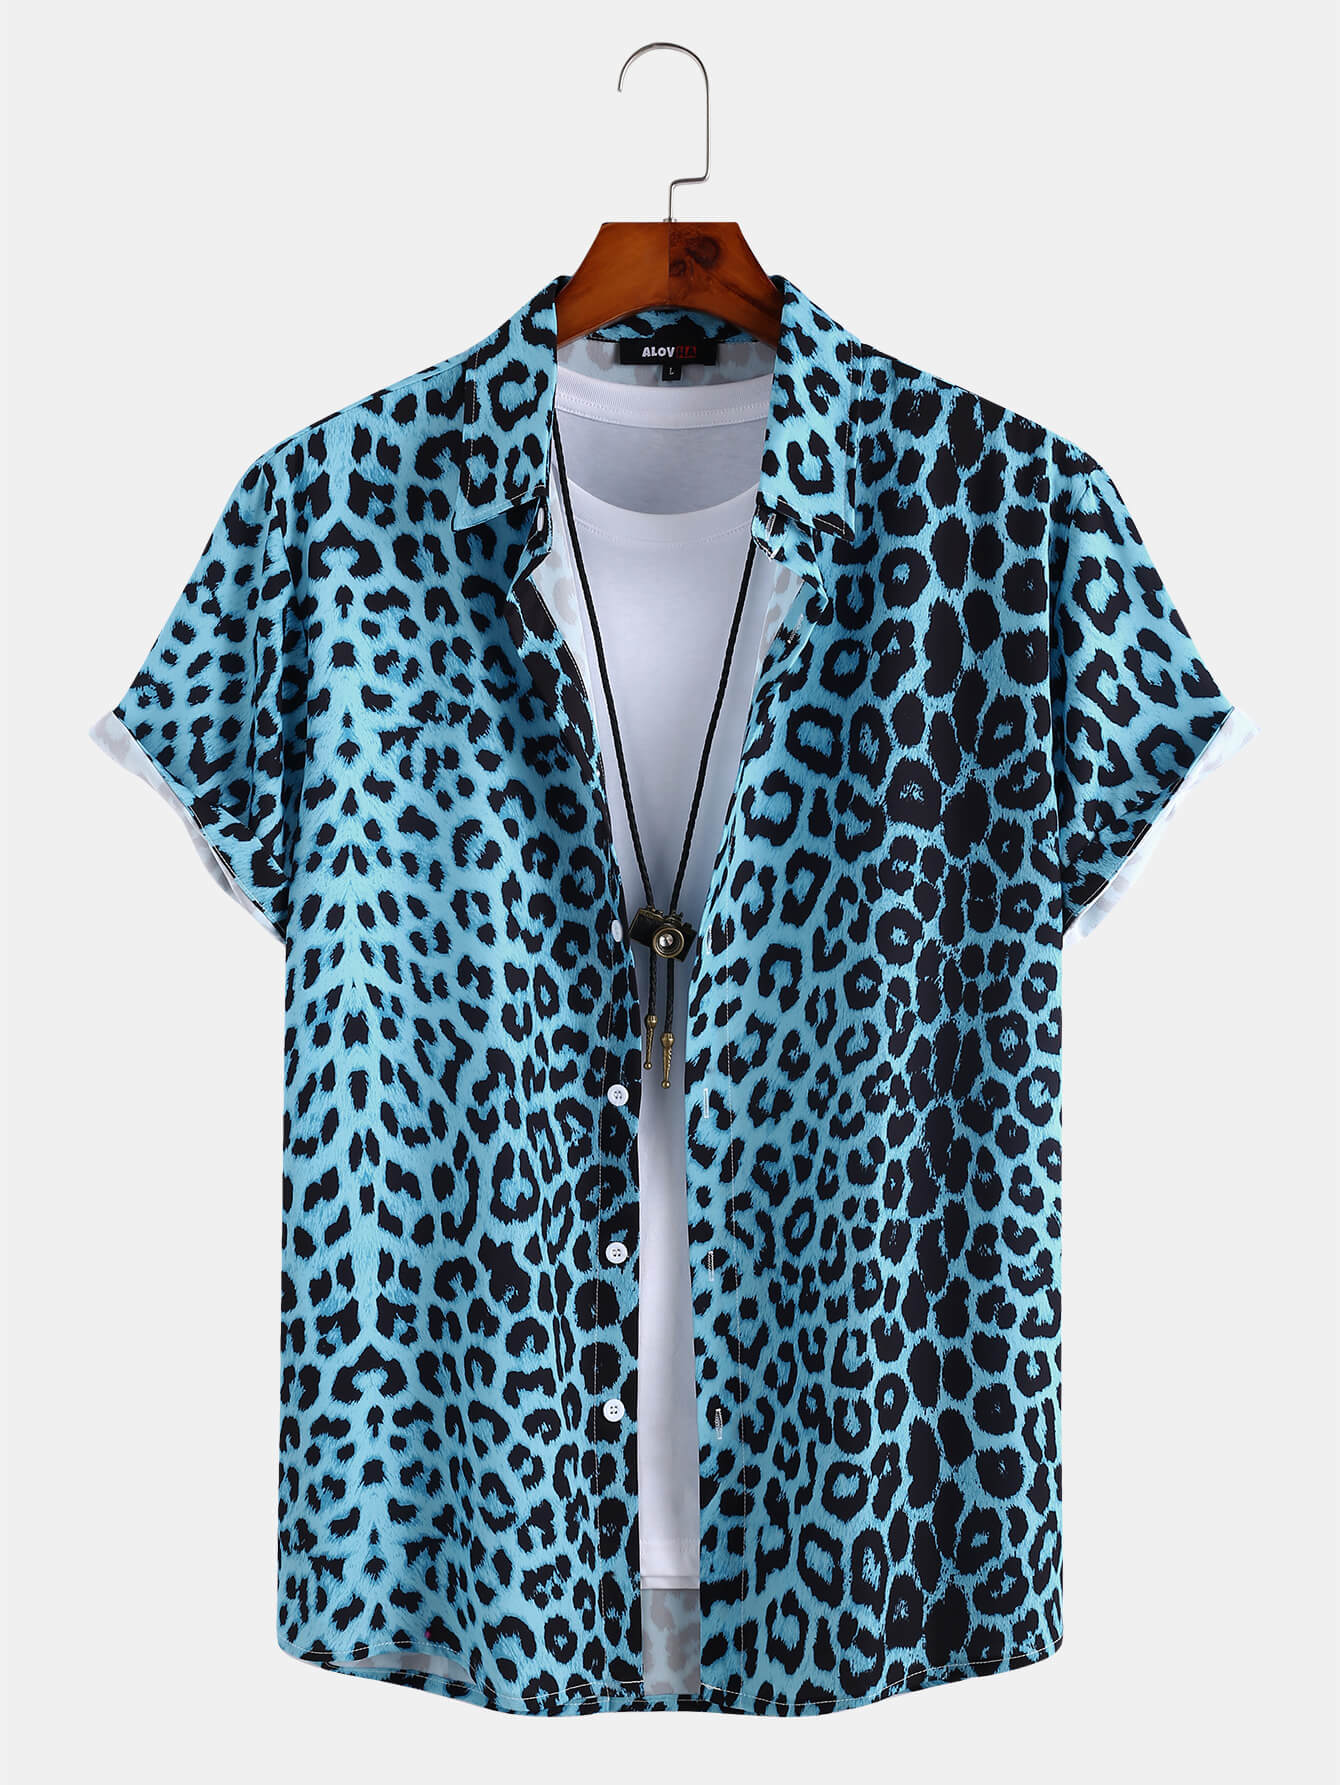 Camicia da uomo a maniche corte con stampa leopardata